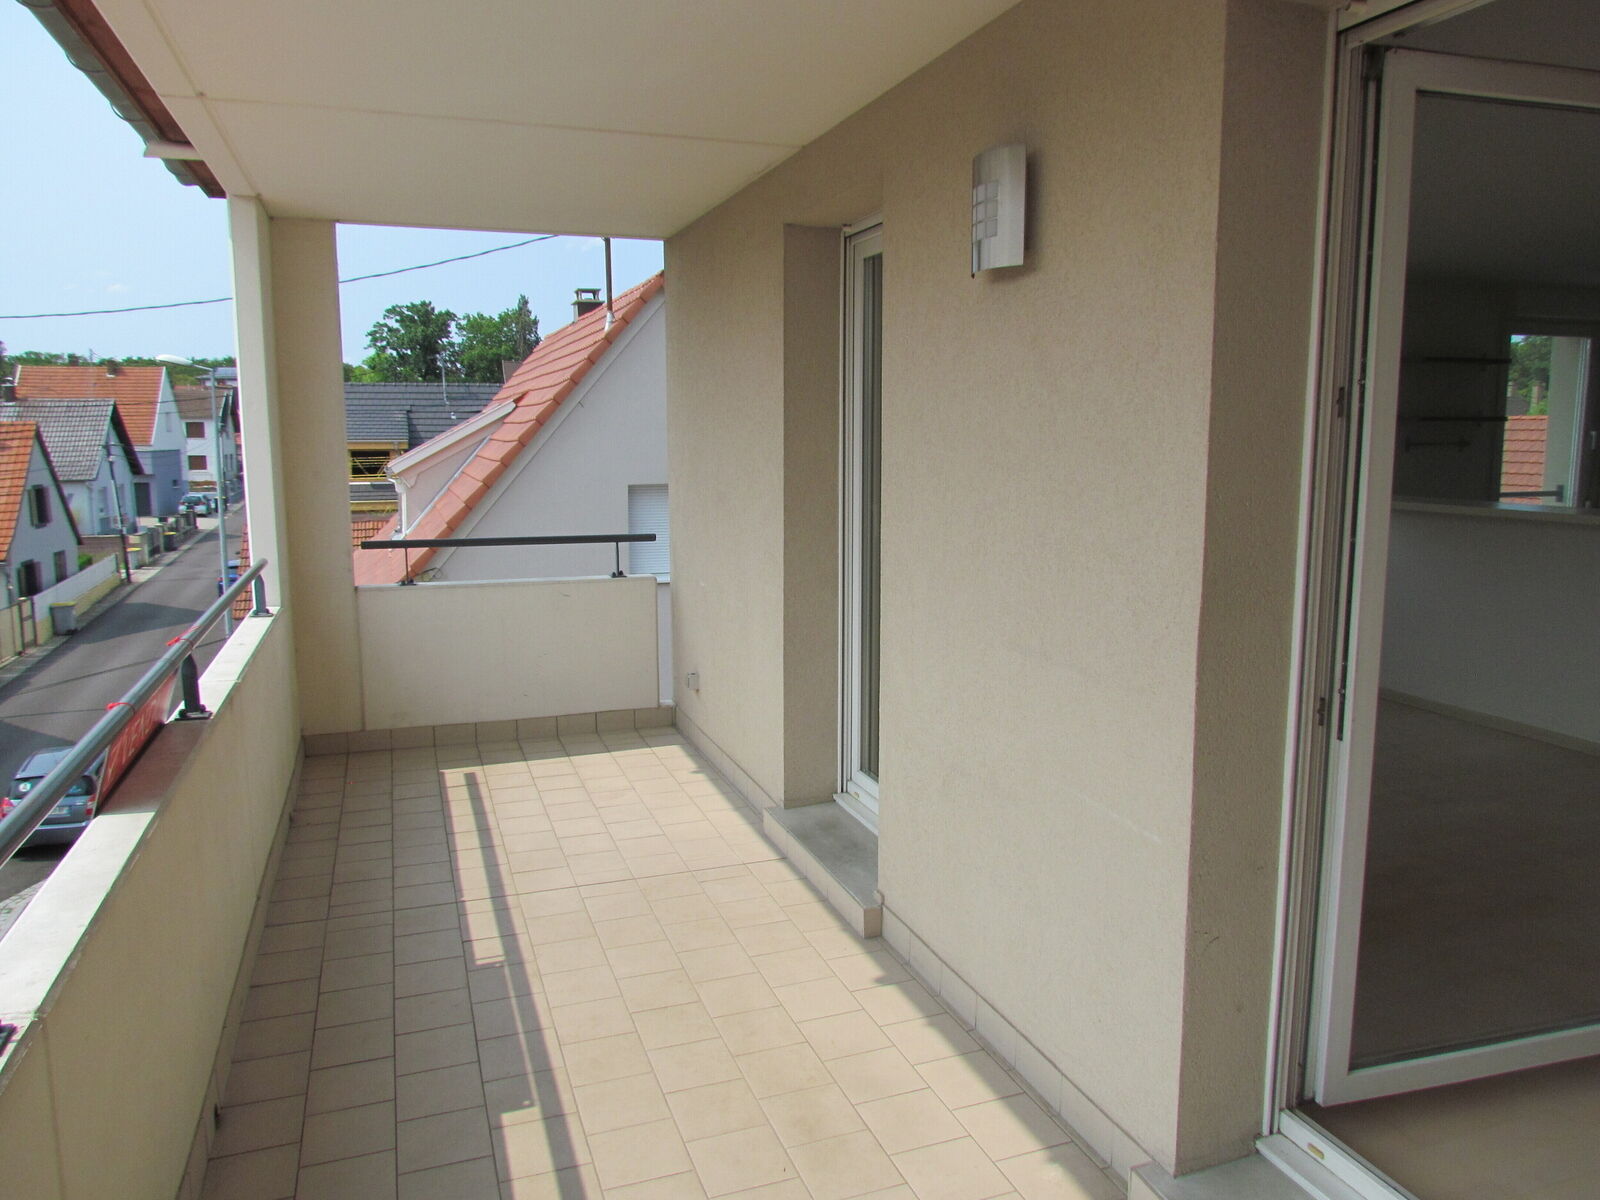 Appartement 3 pièces 75m2 avec ascenseur, garage et parking - Img 1031